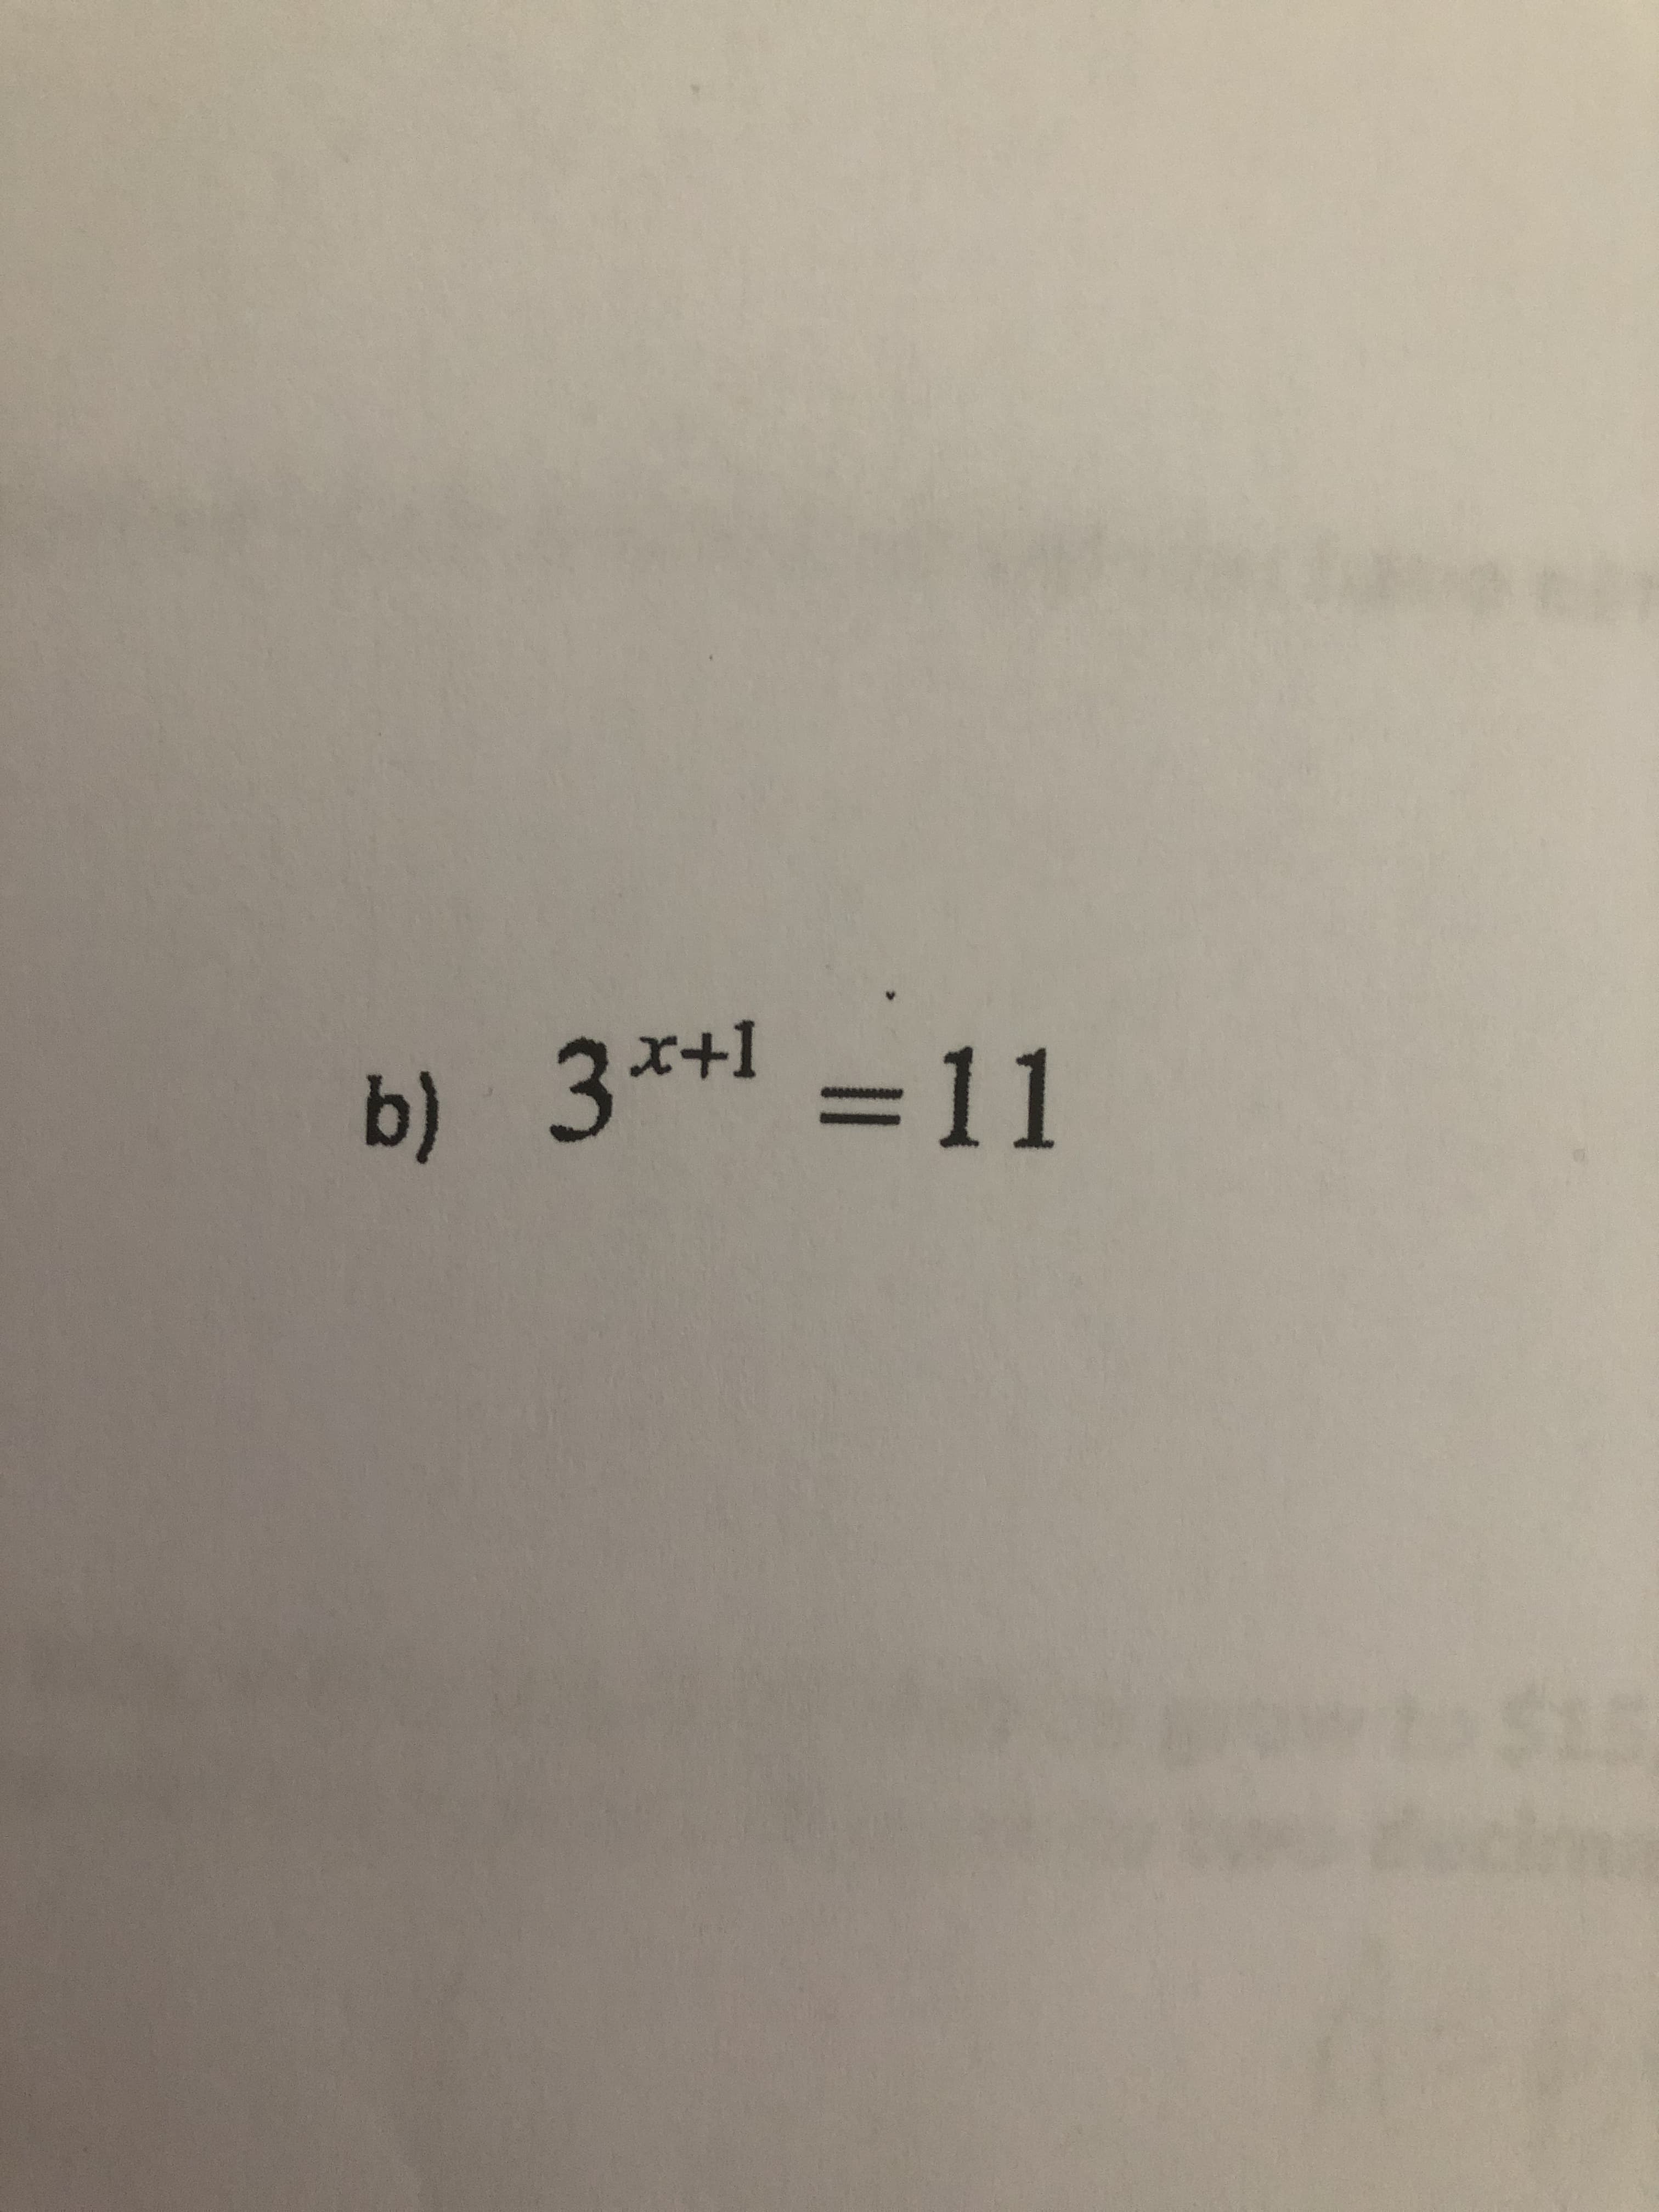 b)
3*+1 =11
